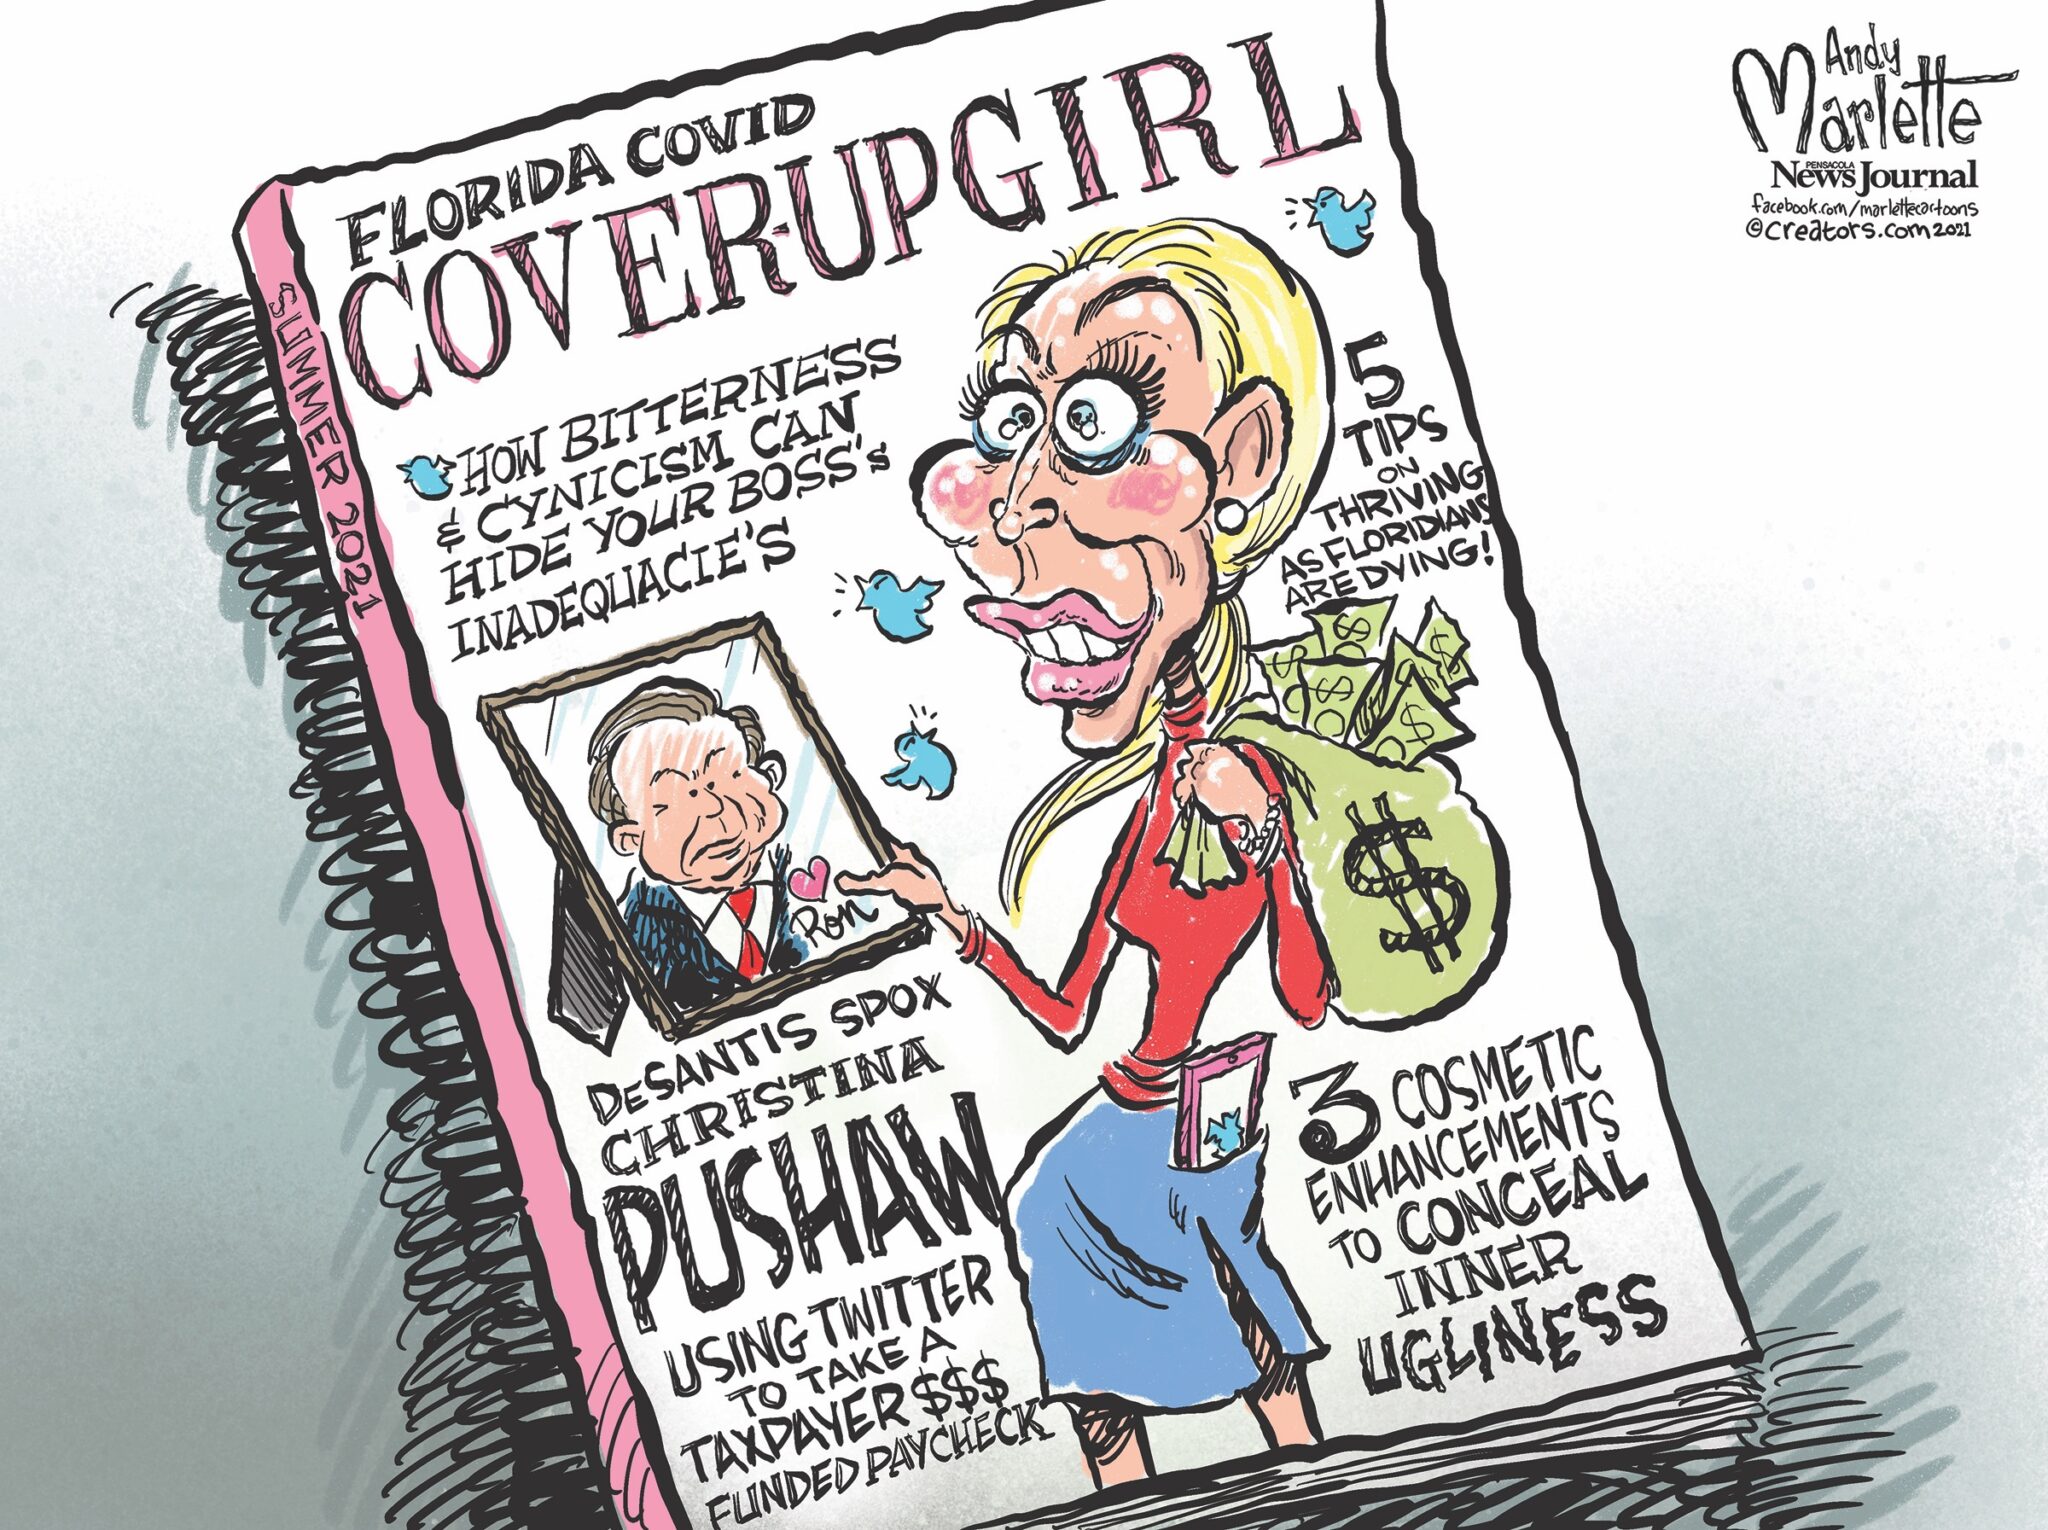 Media Outlet Promotes Sexist Cartoon Of Desantis Spokeswoman Christina Pushaw · The Floridian